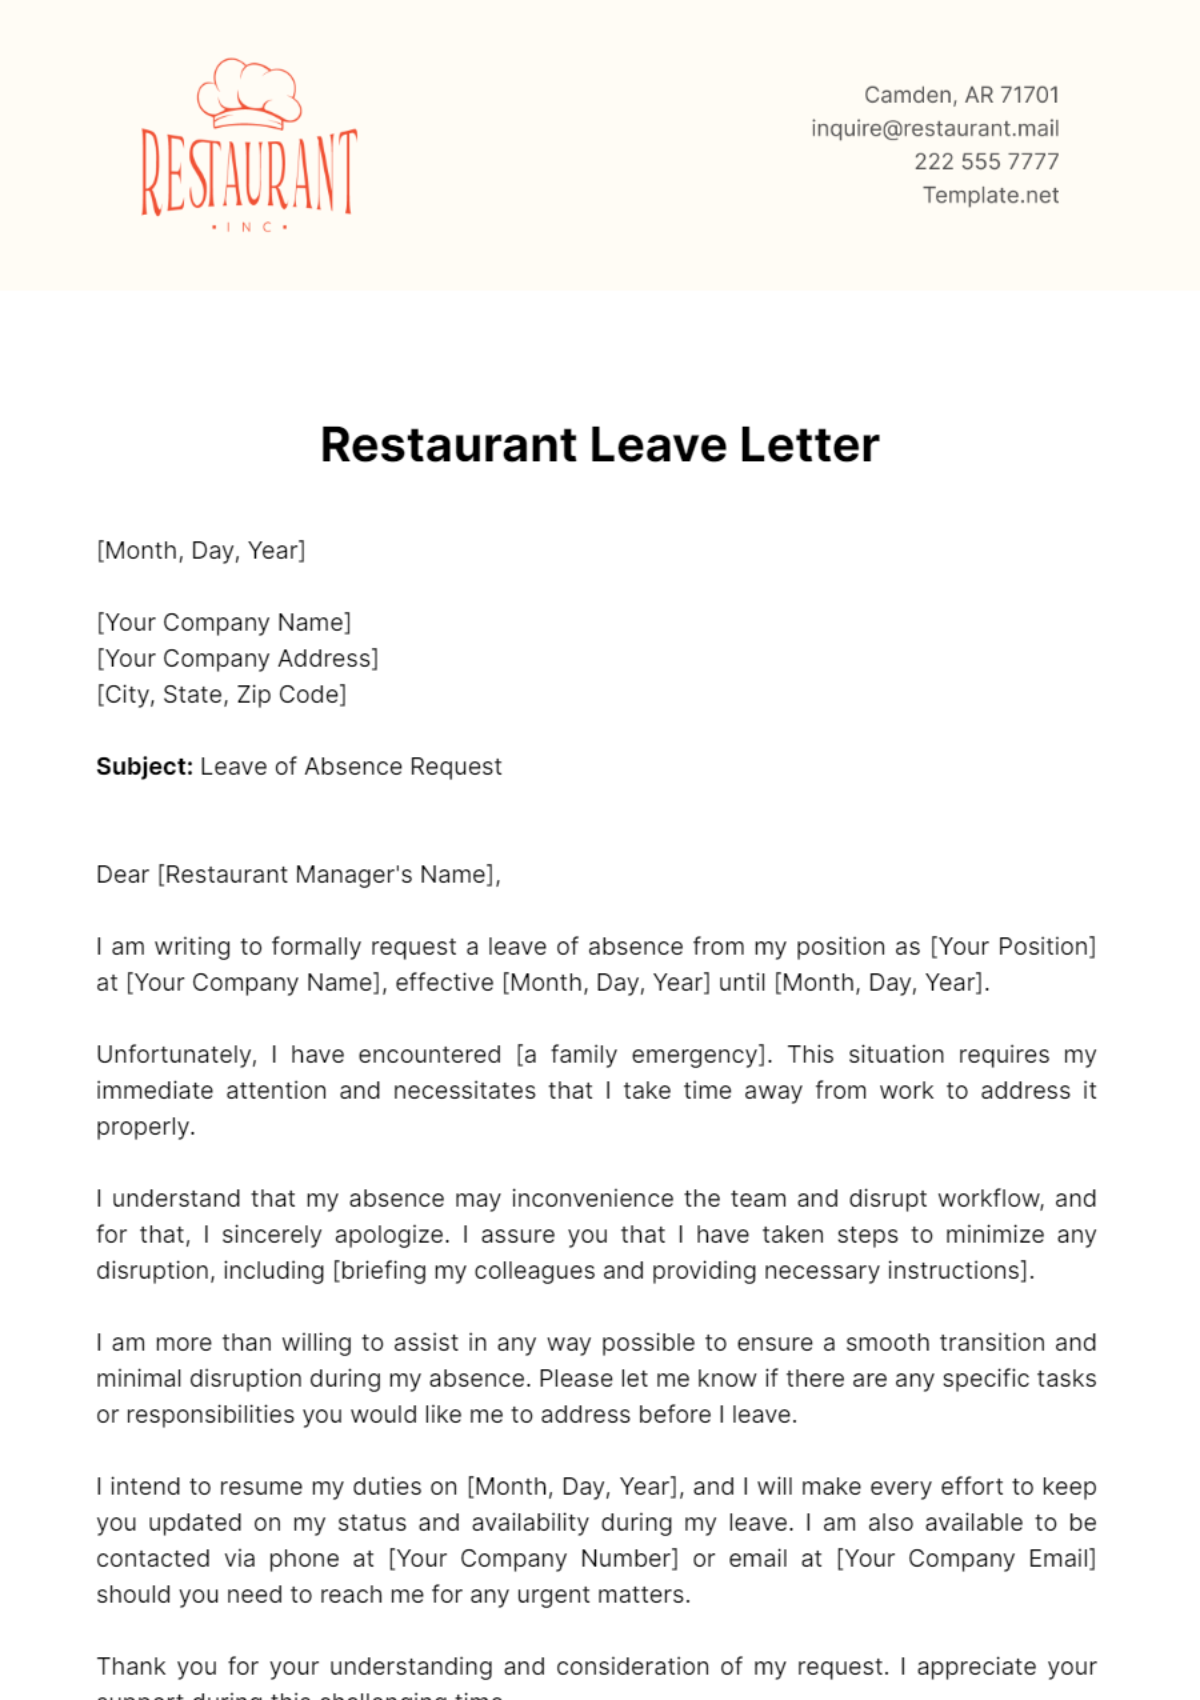 Restaurant Leave Letter Template